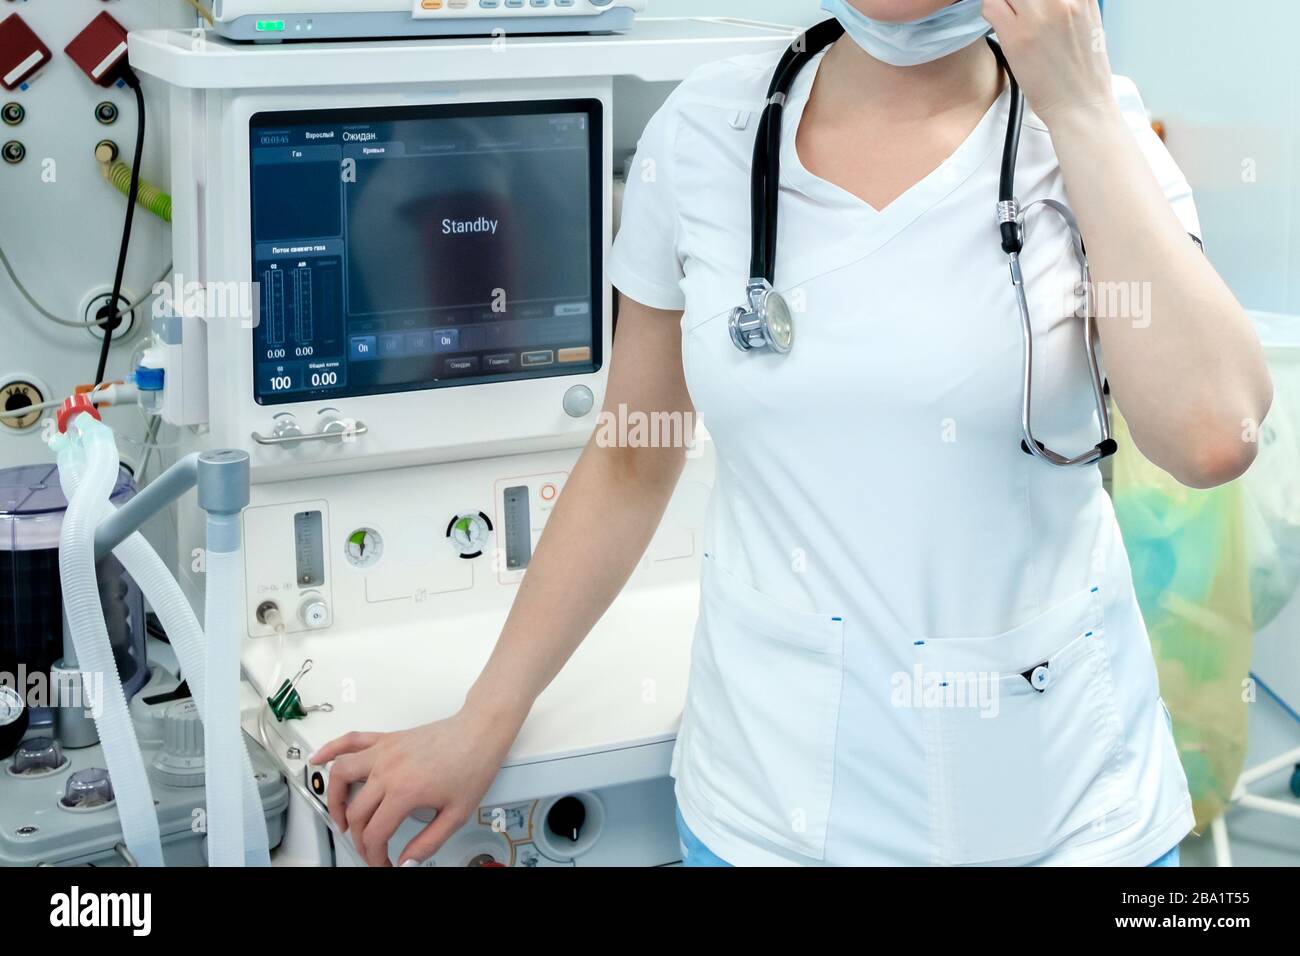 Un anesthésiste en vêtements médicaux blancs, un masque et un stéthoscope sur son cou se trouvent dans la salle d'opération. Derrière le médecin se trouvent des moniteurs de hig Banque D'Images